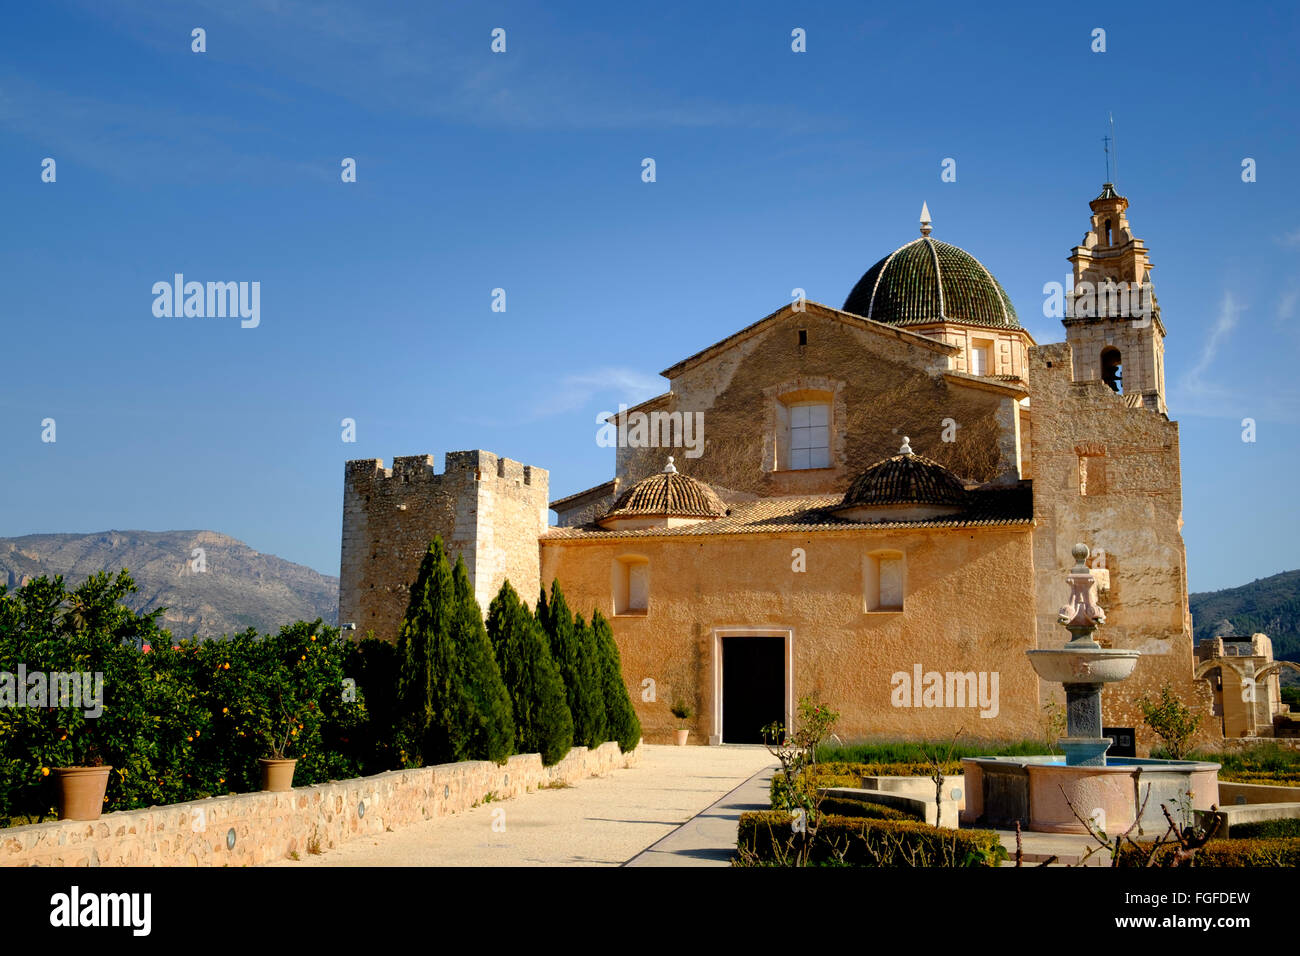 Le monastère cistercien de Saint Mary Simat de Valldigna en Espagne Banque D'Images